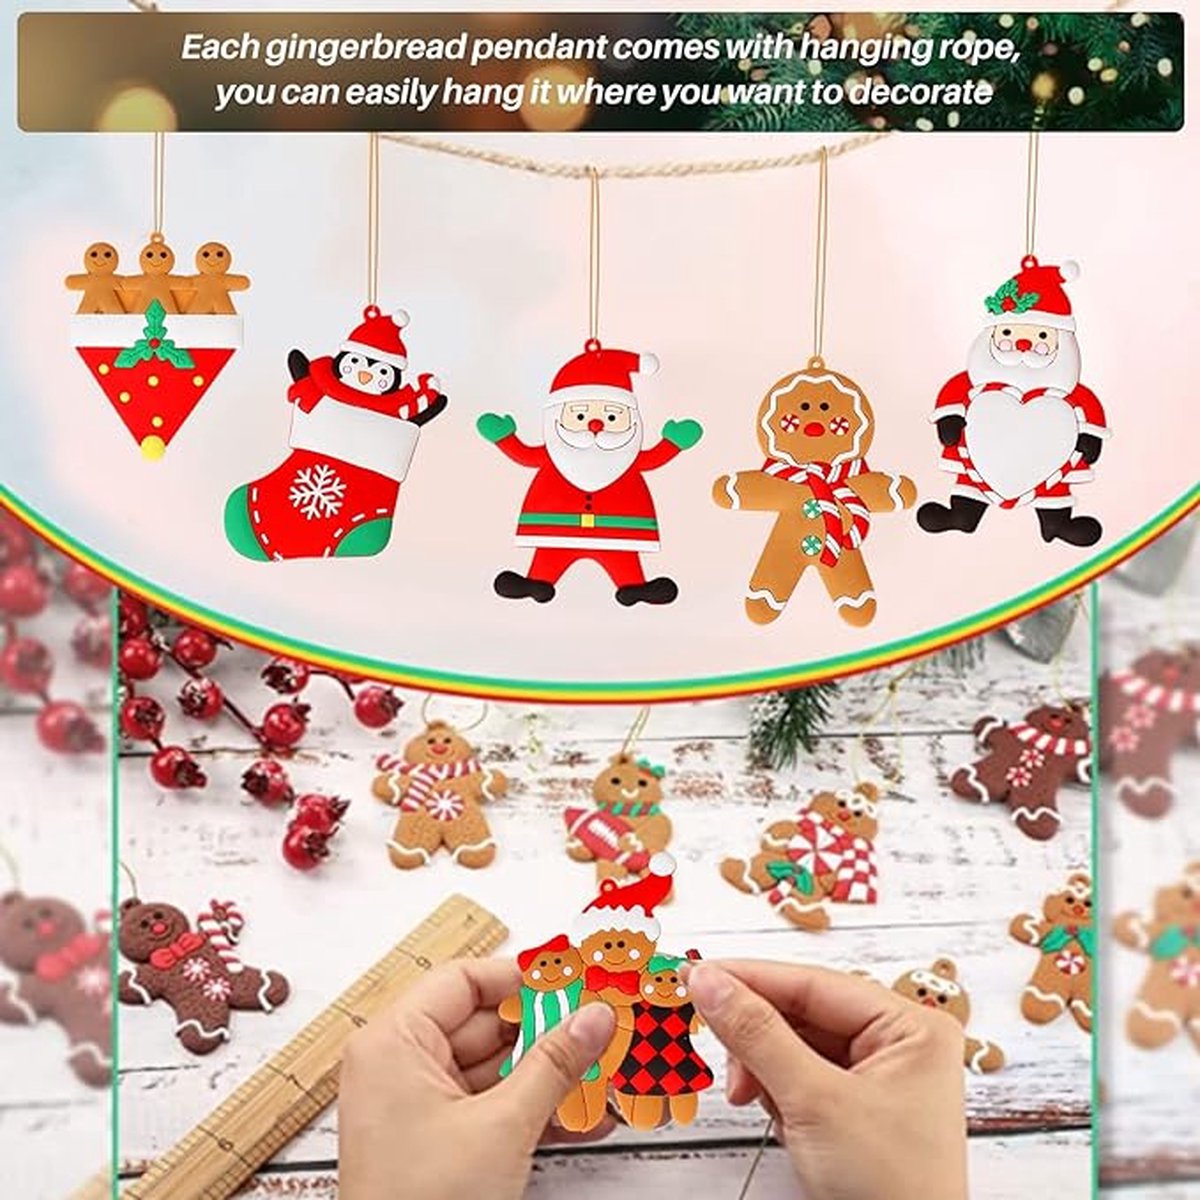 Peperkoekenman kerstboomversiering, 6 stuks, grote maten, peperkoekman-hanger, kerstboomversiering, peperkoekmannetje, decoratie, grote afmetingen, 12 x 8,5 cm